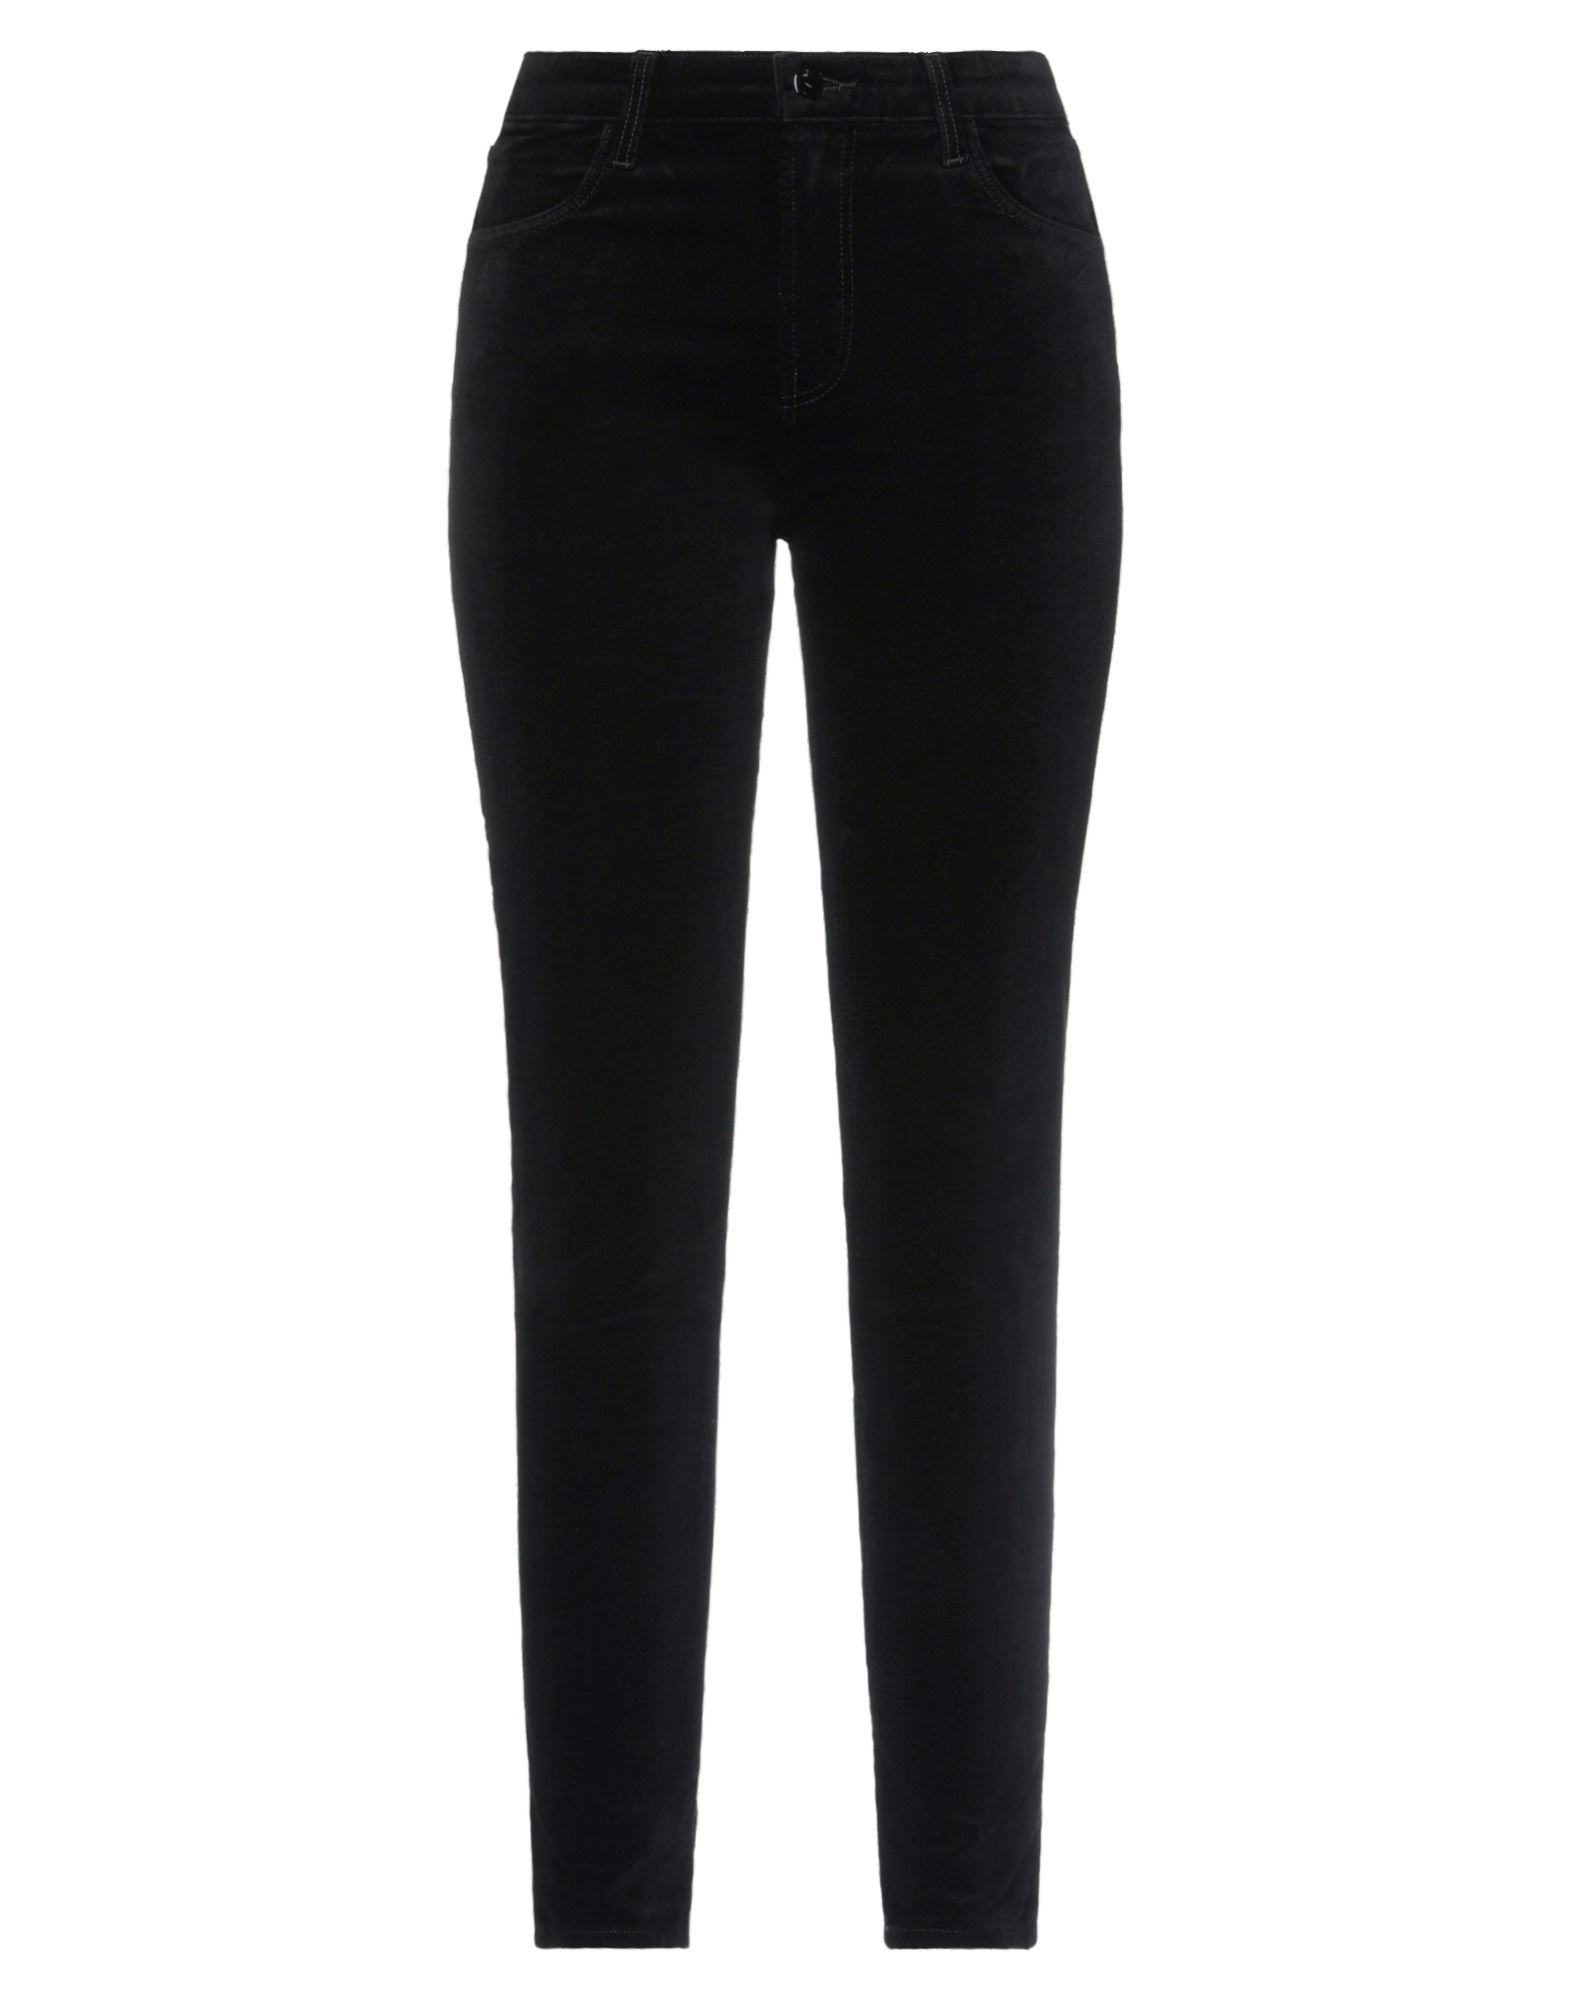 J Brand Woman Pants Black Size 23 Cotton, Modal, Elastane